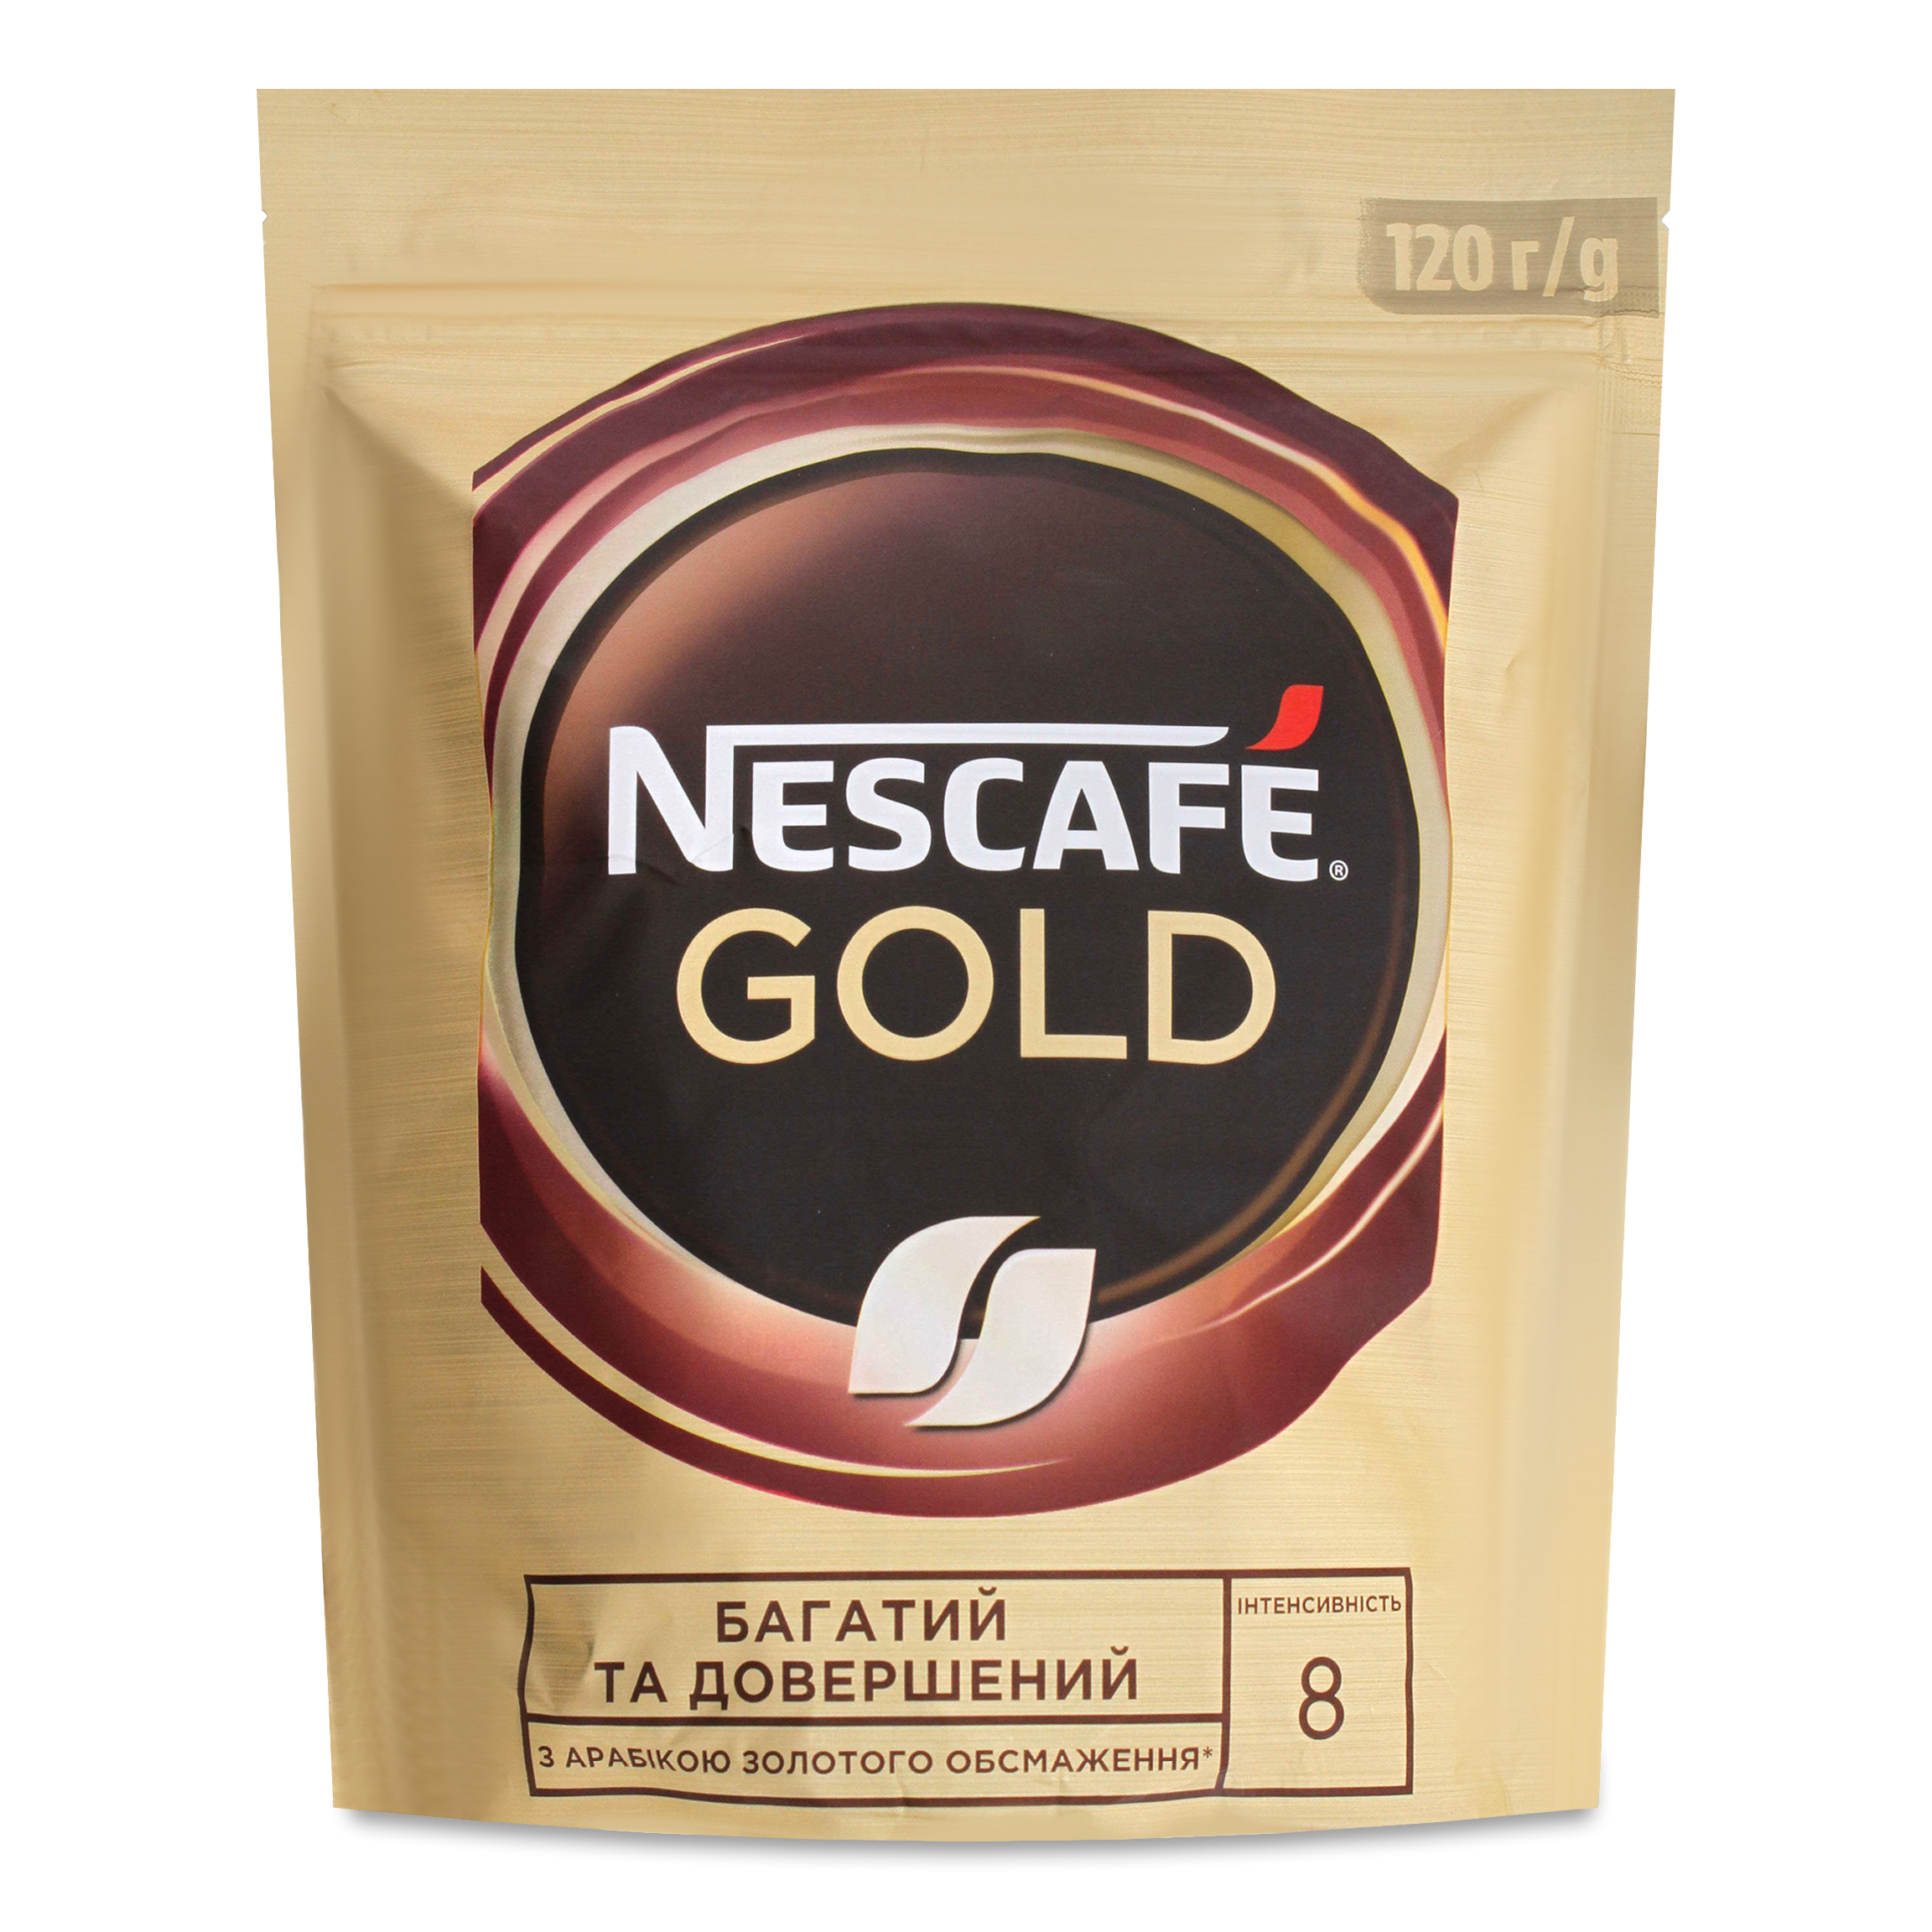 Кава NESCAFE Gold розчинна 120г